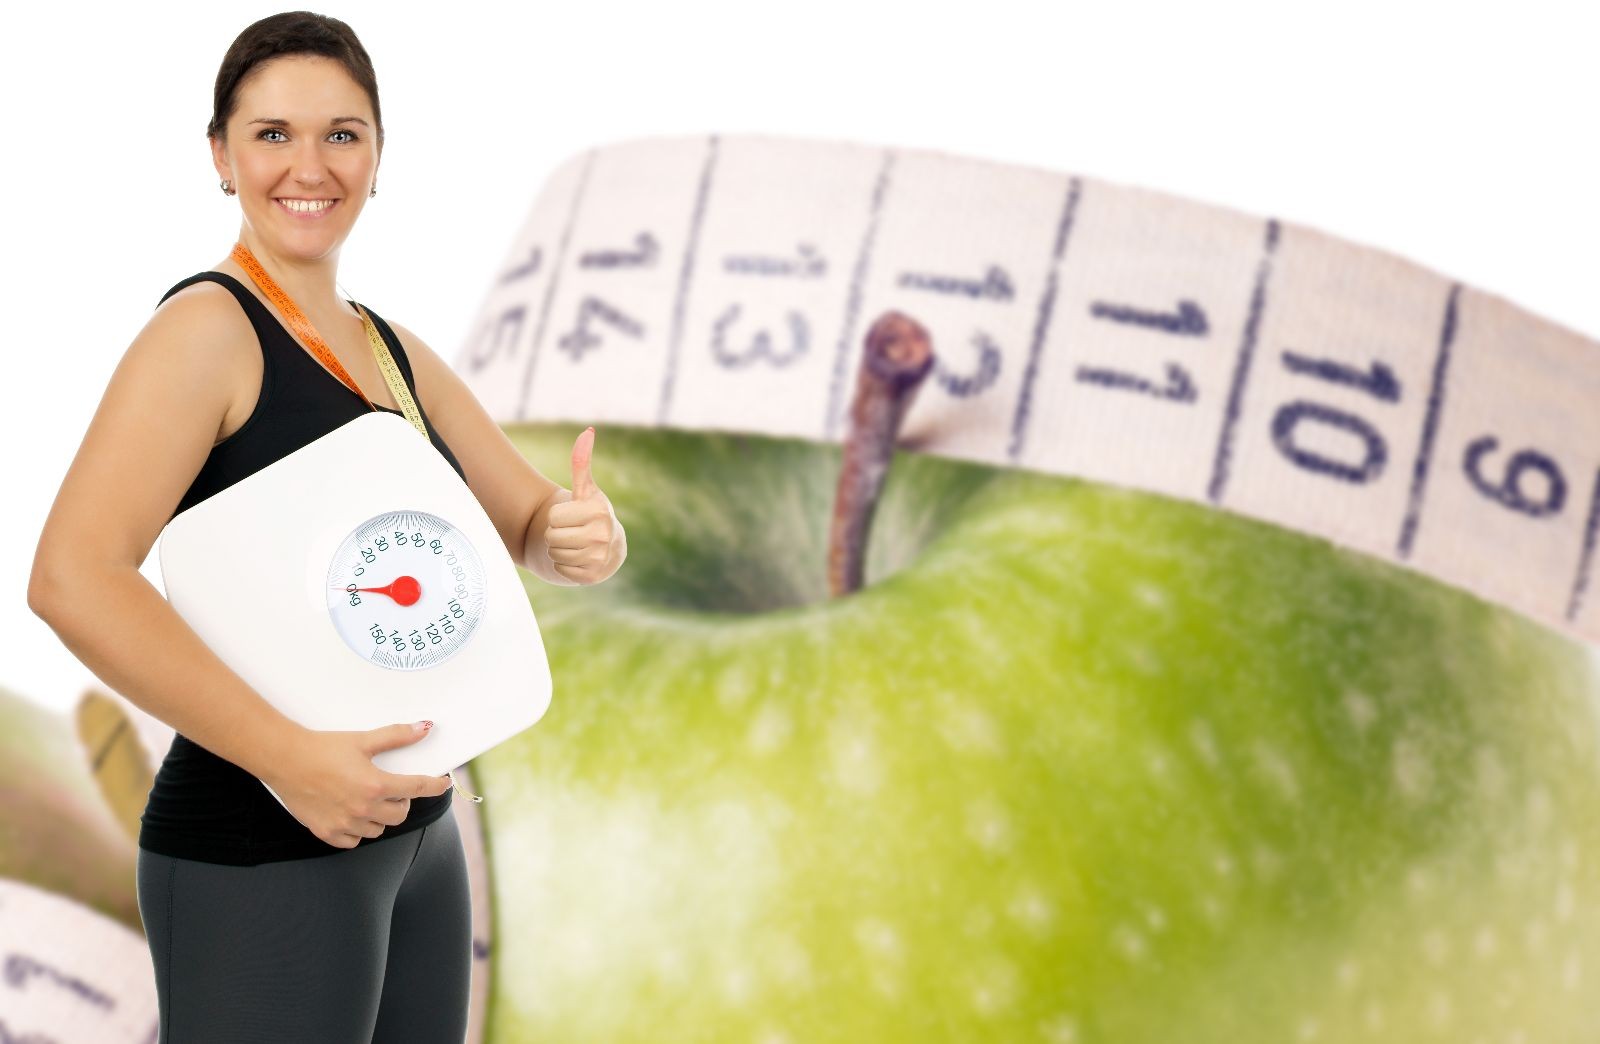 Mujer sosteniendo una bascula al fondo una manzana con cinta métrica